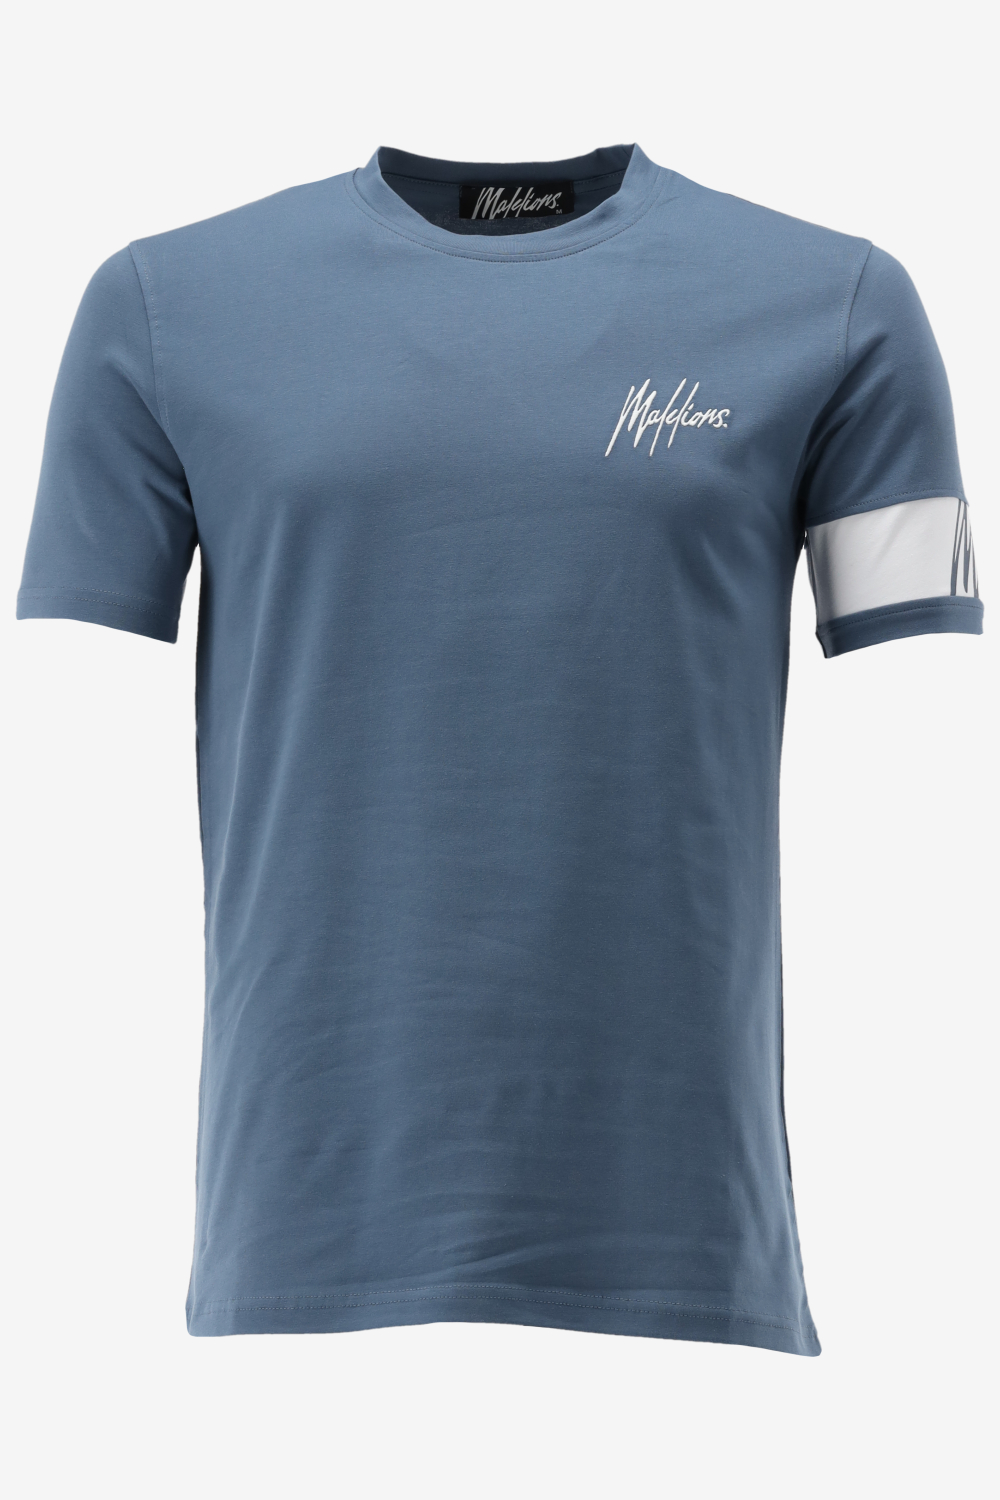 Malelions T-shirt MEN CAPTAIN T-SHIRT